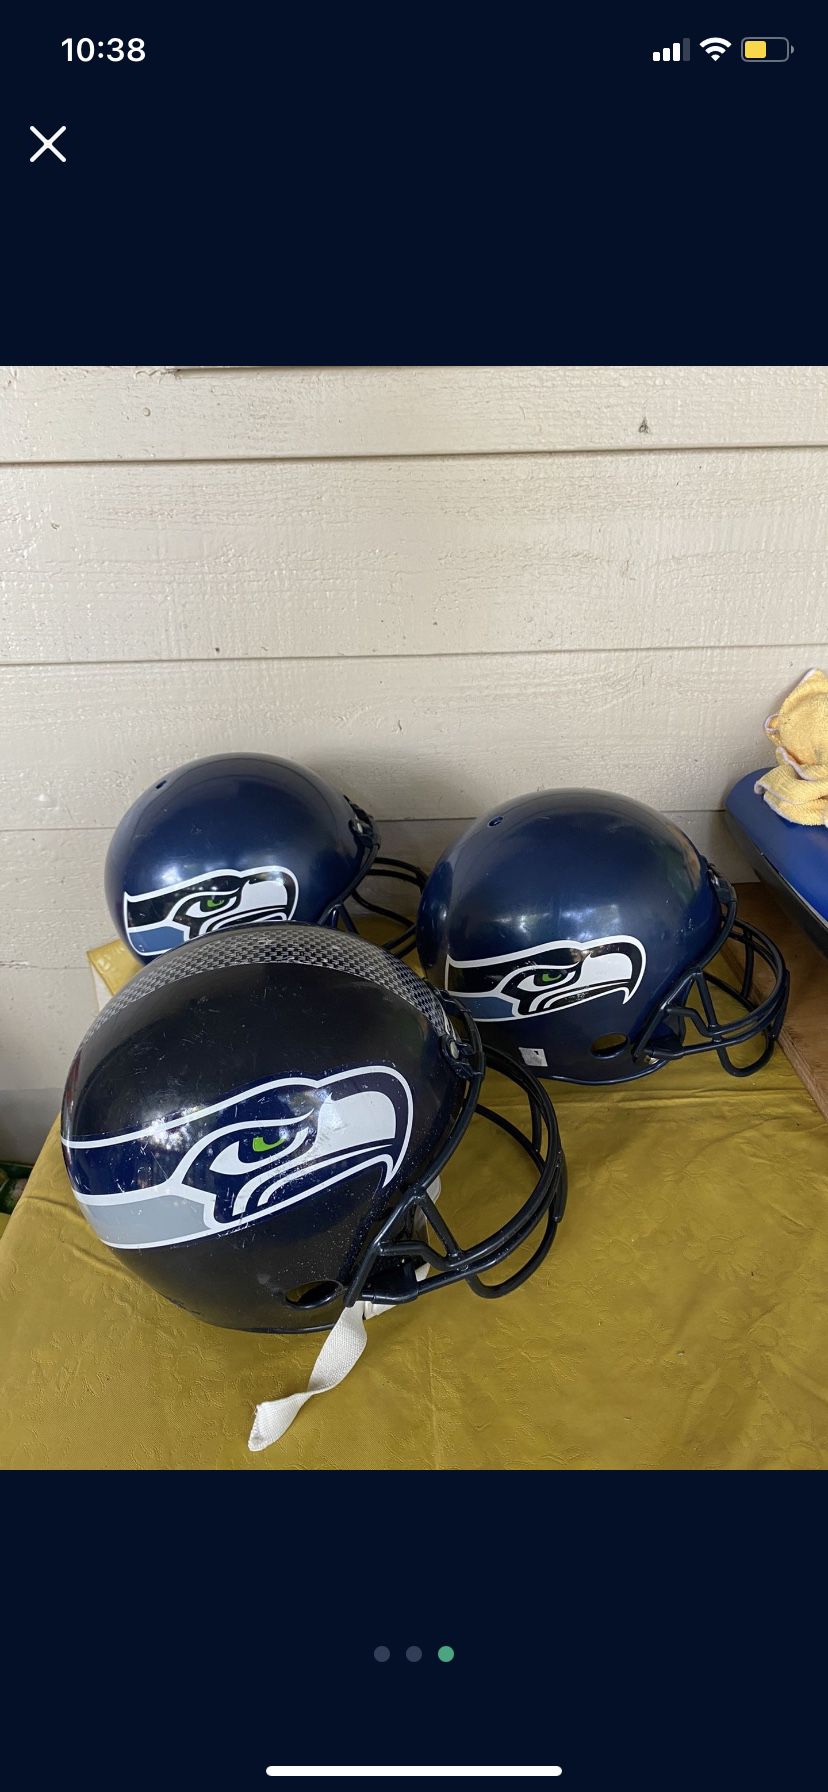 Seahawks Helmet 